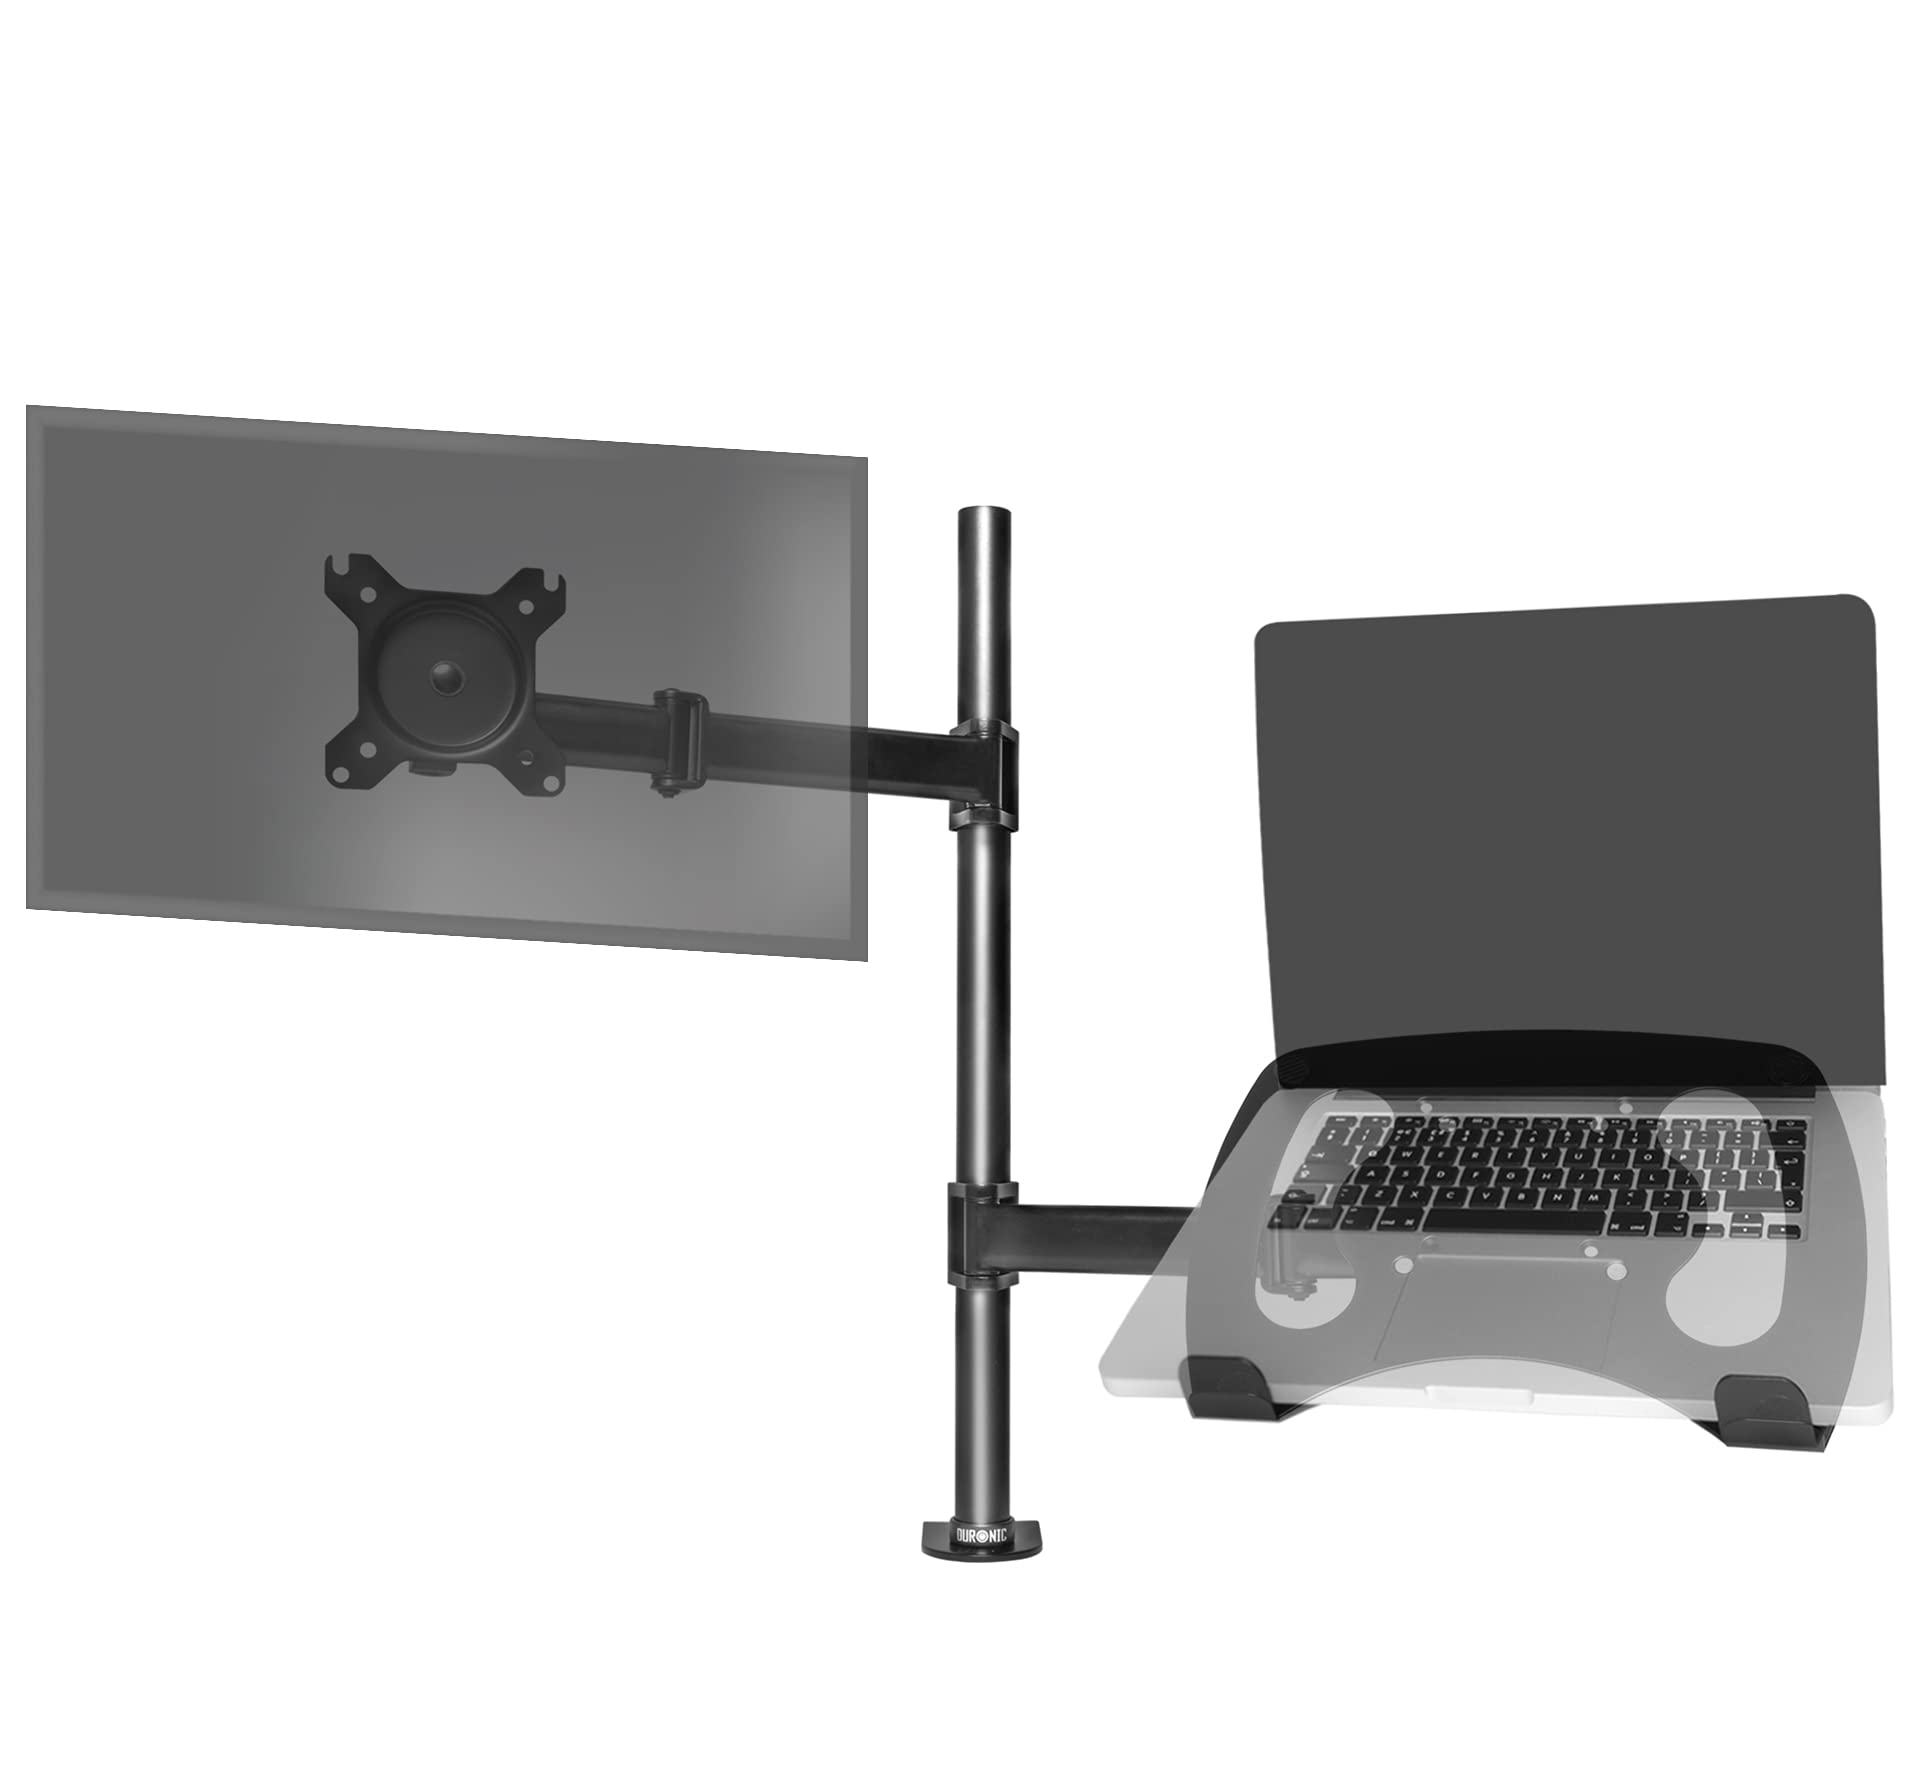 Duronic Dm25l1x1 Soporte brazo para monitor 1327 vesa 100x100 8kg bk de 13 a 27” hasta plataforma suplementaria teclado cabezal 27 negro pantalla i9u18tj6ju 27